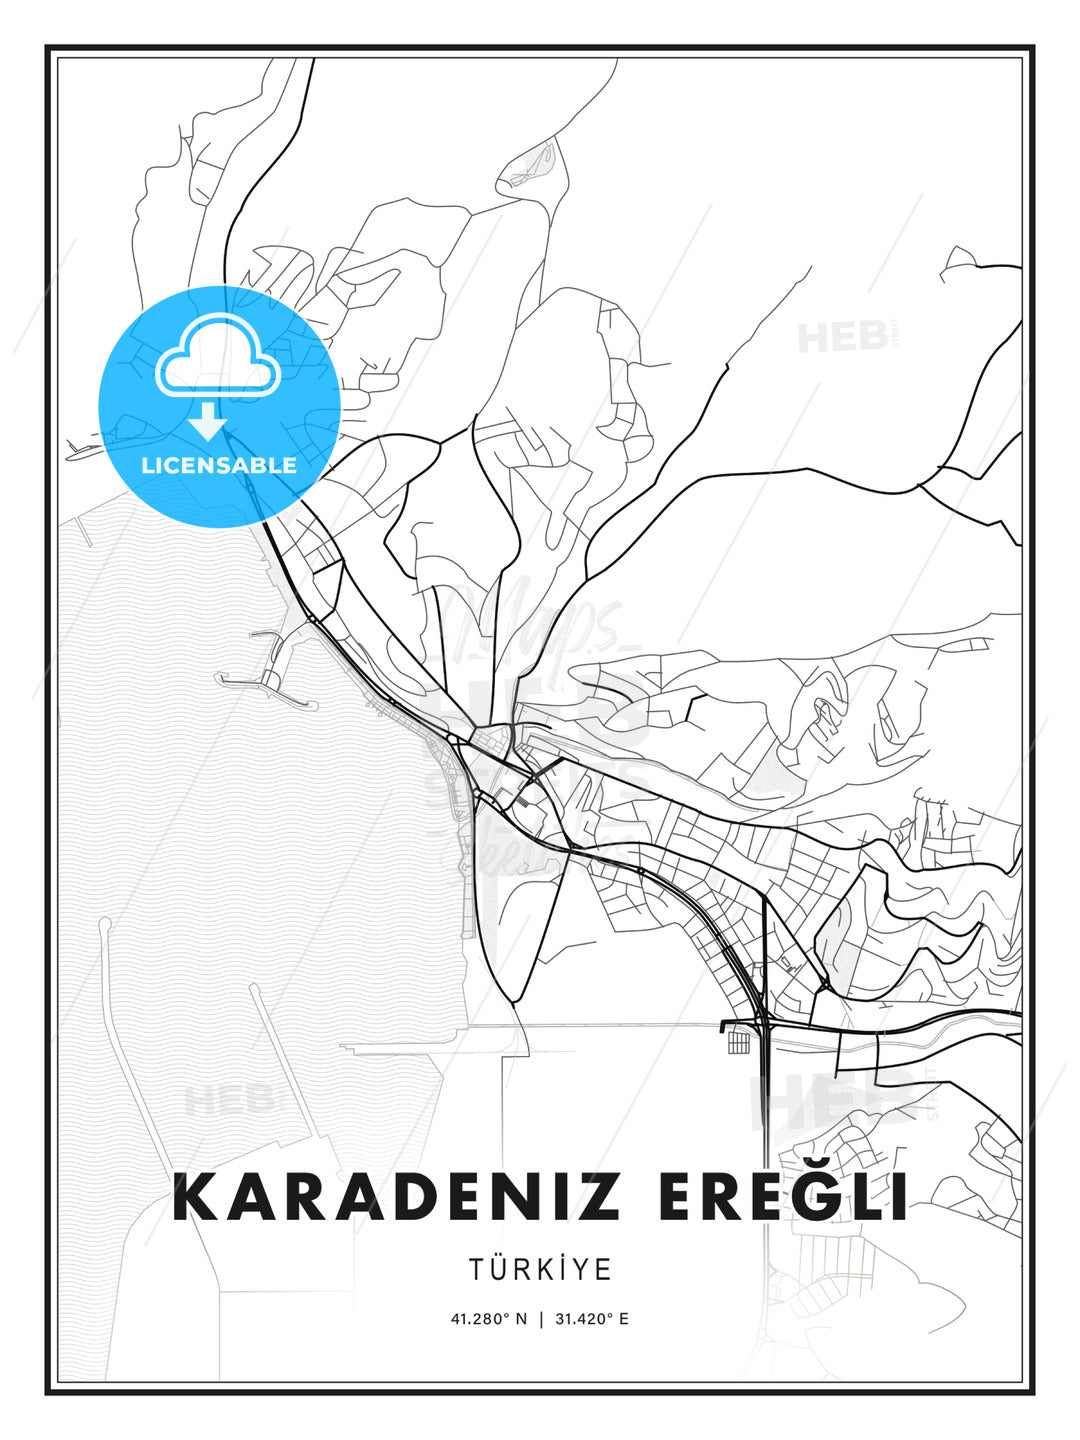 Karadeniz Ereğli, Turkey, Modern Print Template in Various Formats - HEBSTREITS Sketches